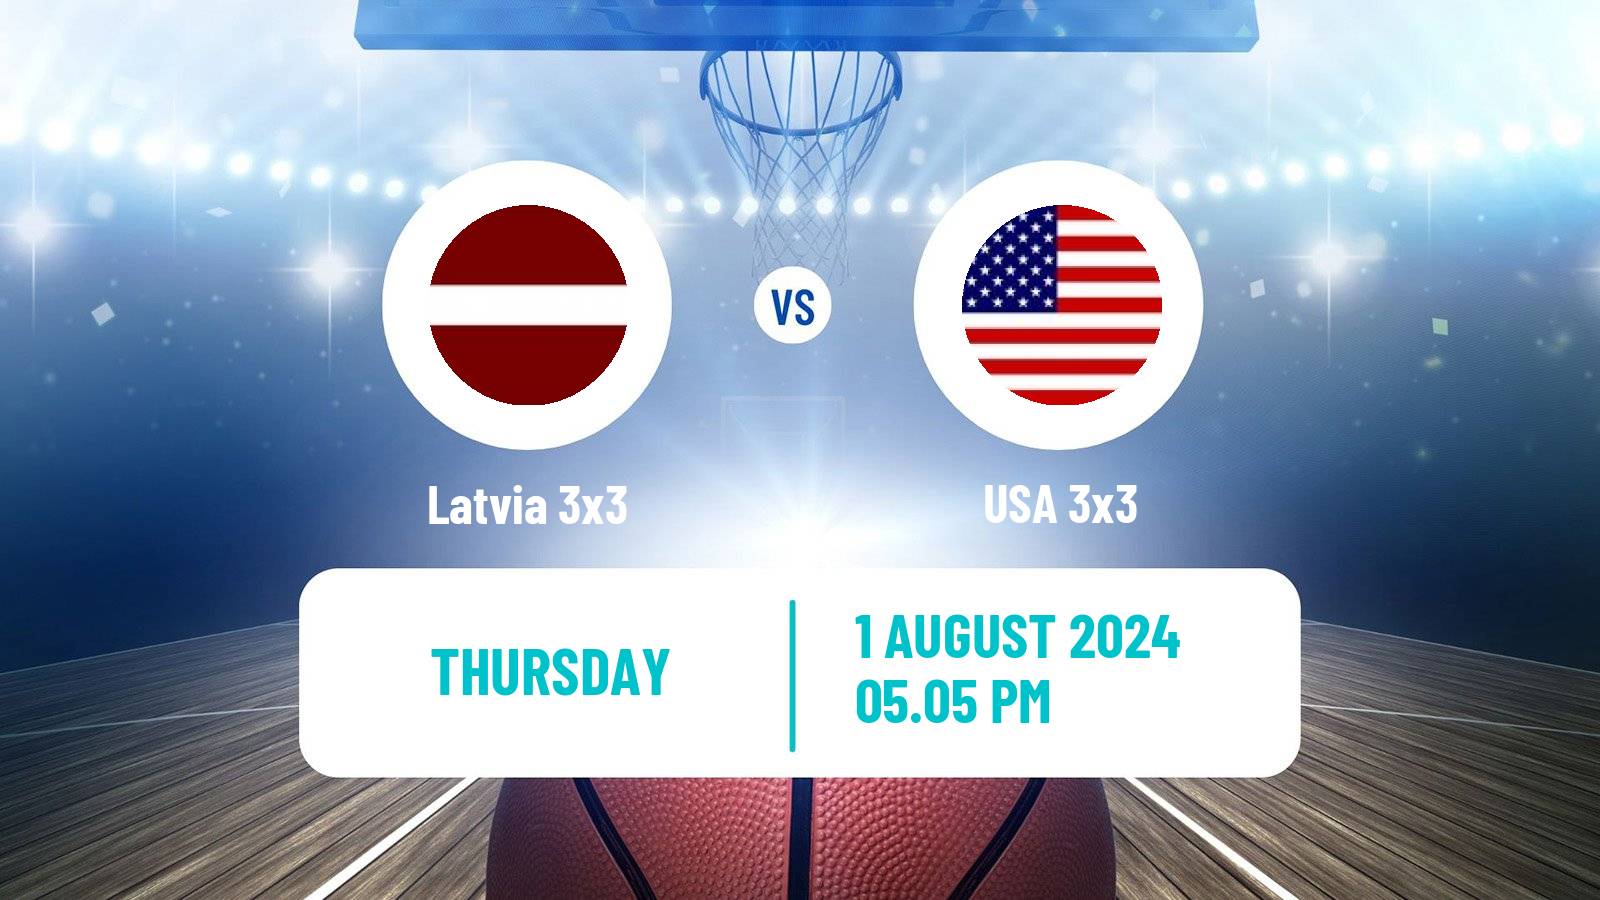 Basketball Olympic Games Basketball 3x3 Latvia 3x3 - USA 3x3